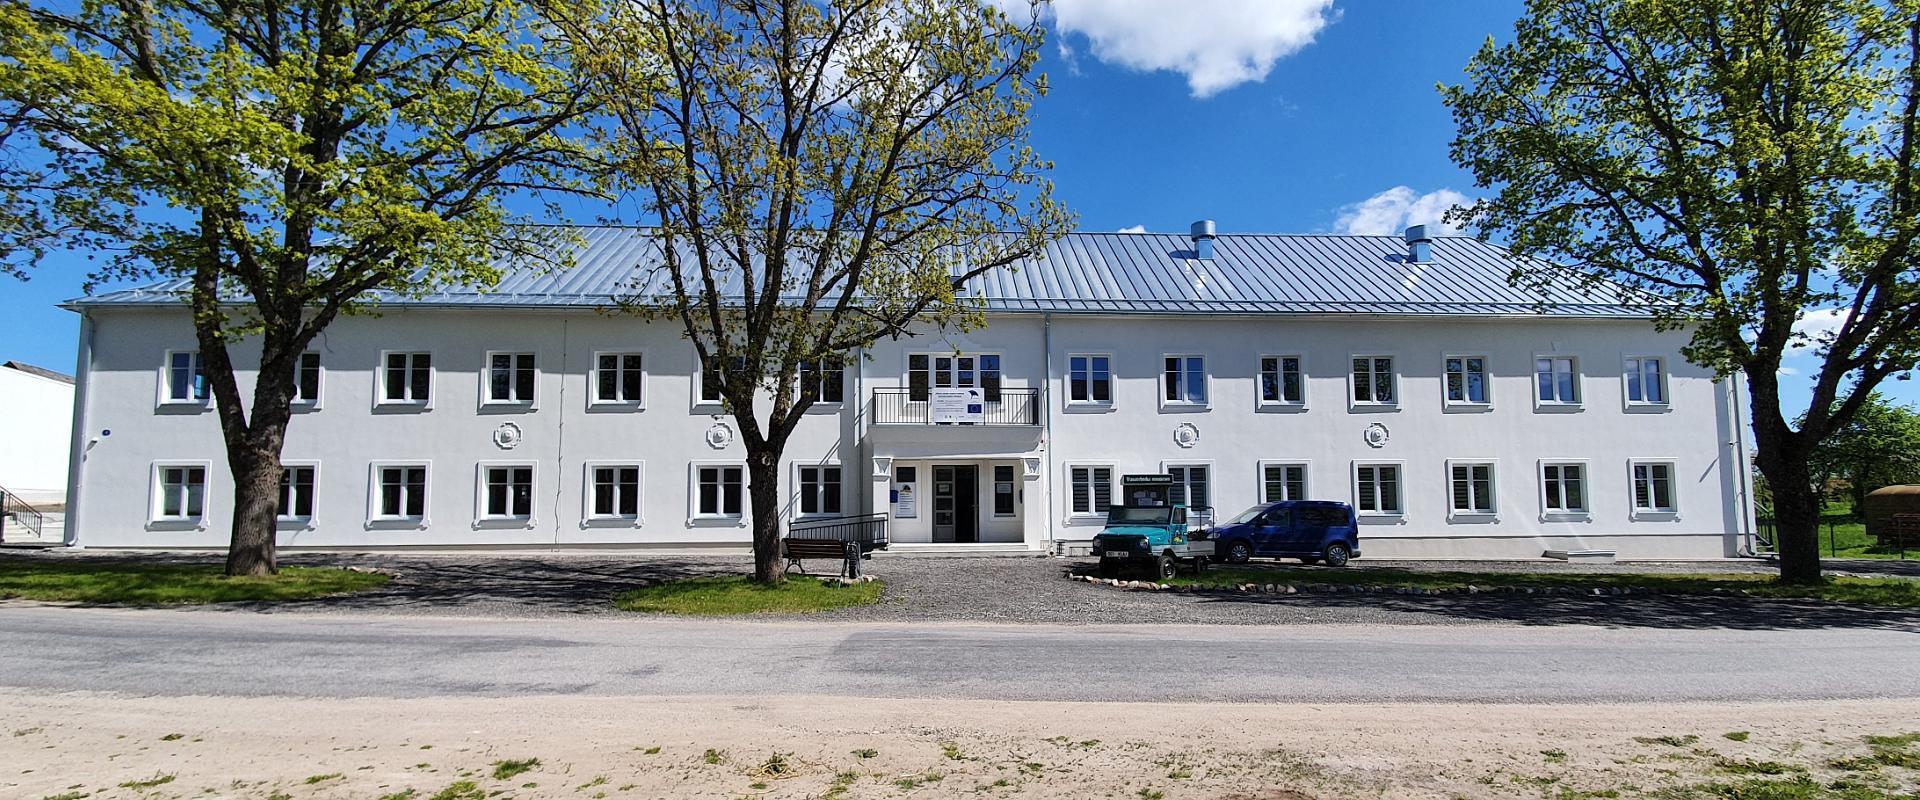 Järva-Jaanin vanhan kaluston museokeskus